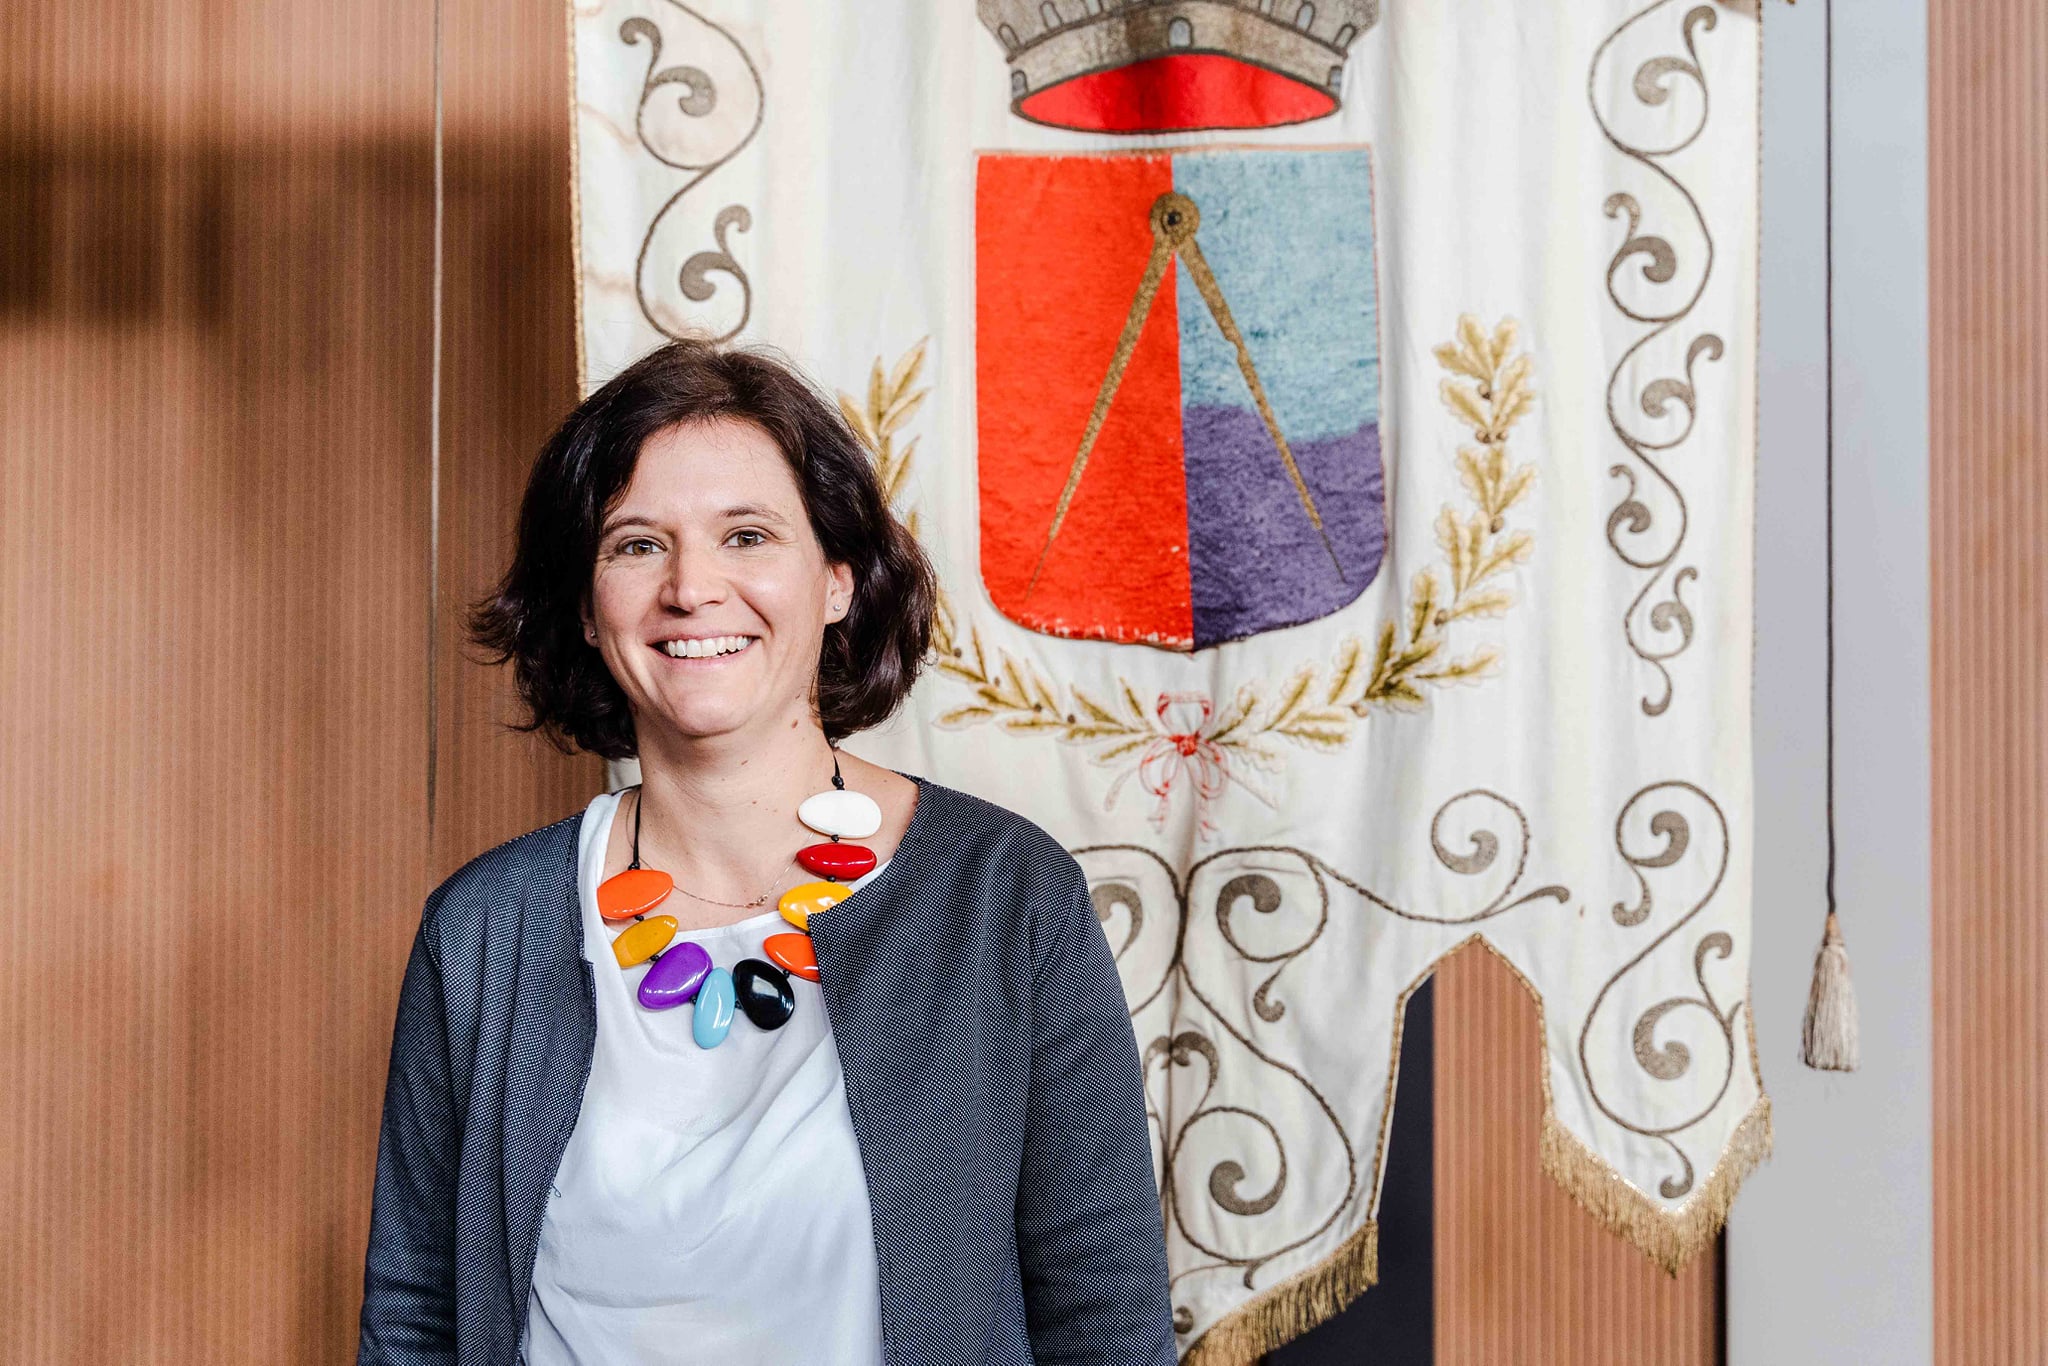 La presidente Camilla Sanquerin (Fonte foto SdS fiorentina nord ovest)